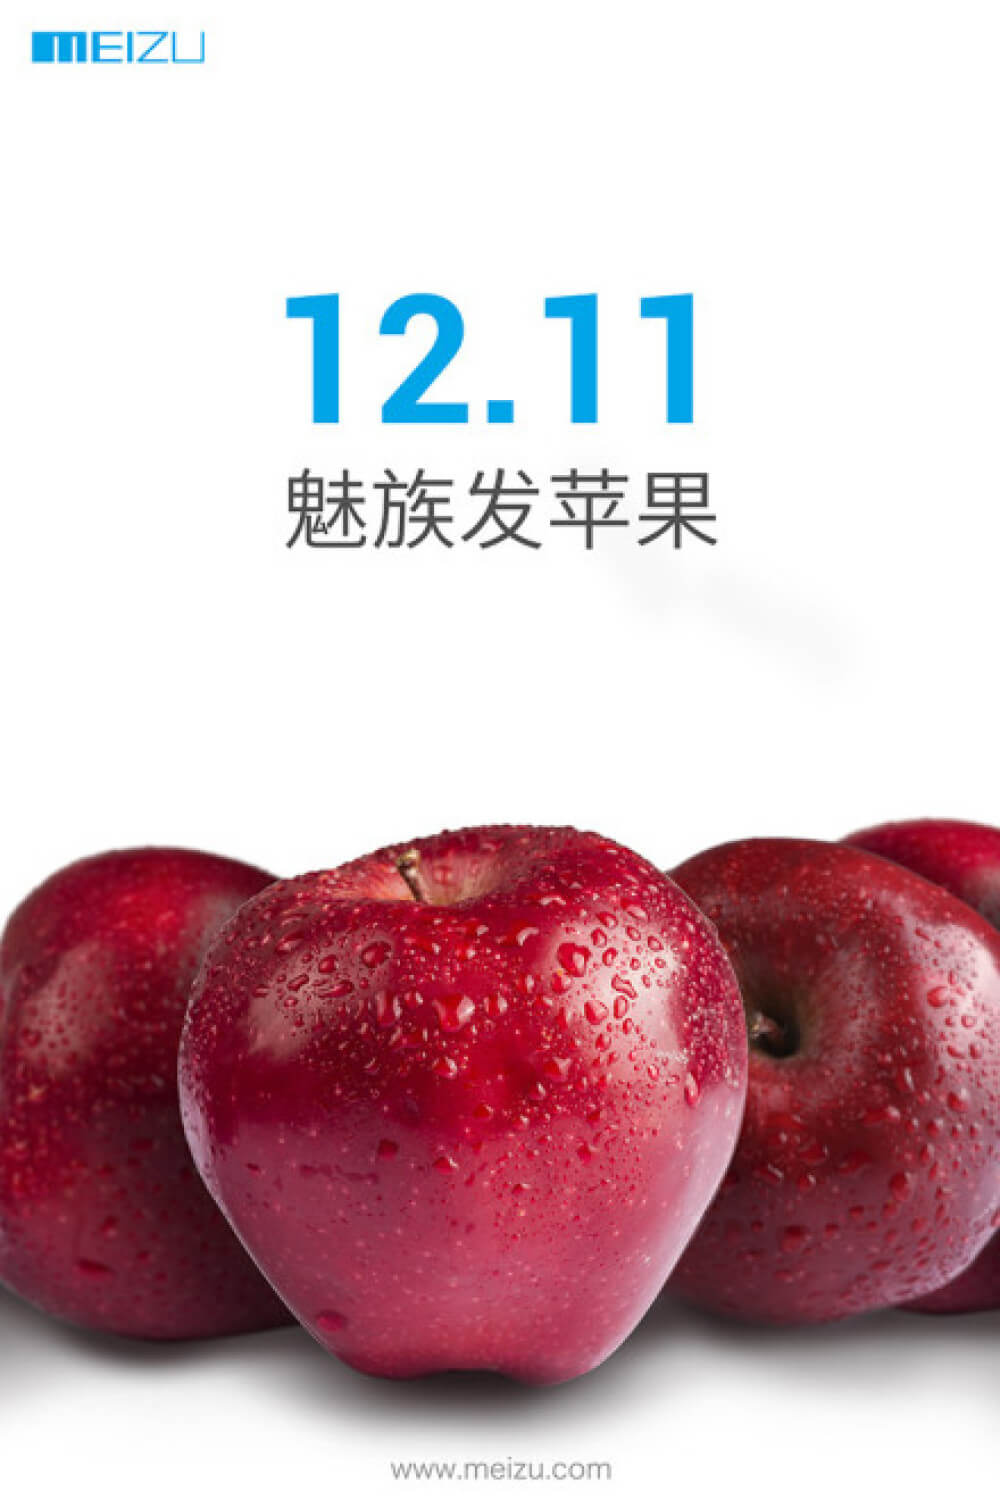 Что покажет Meizu 11 декабря? Фото.